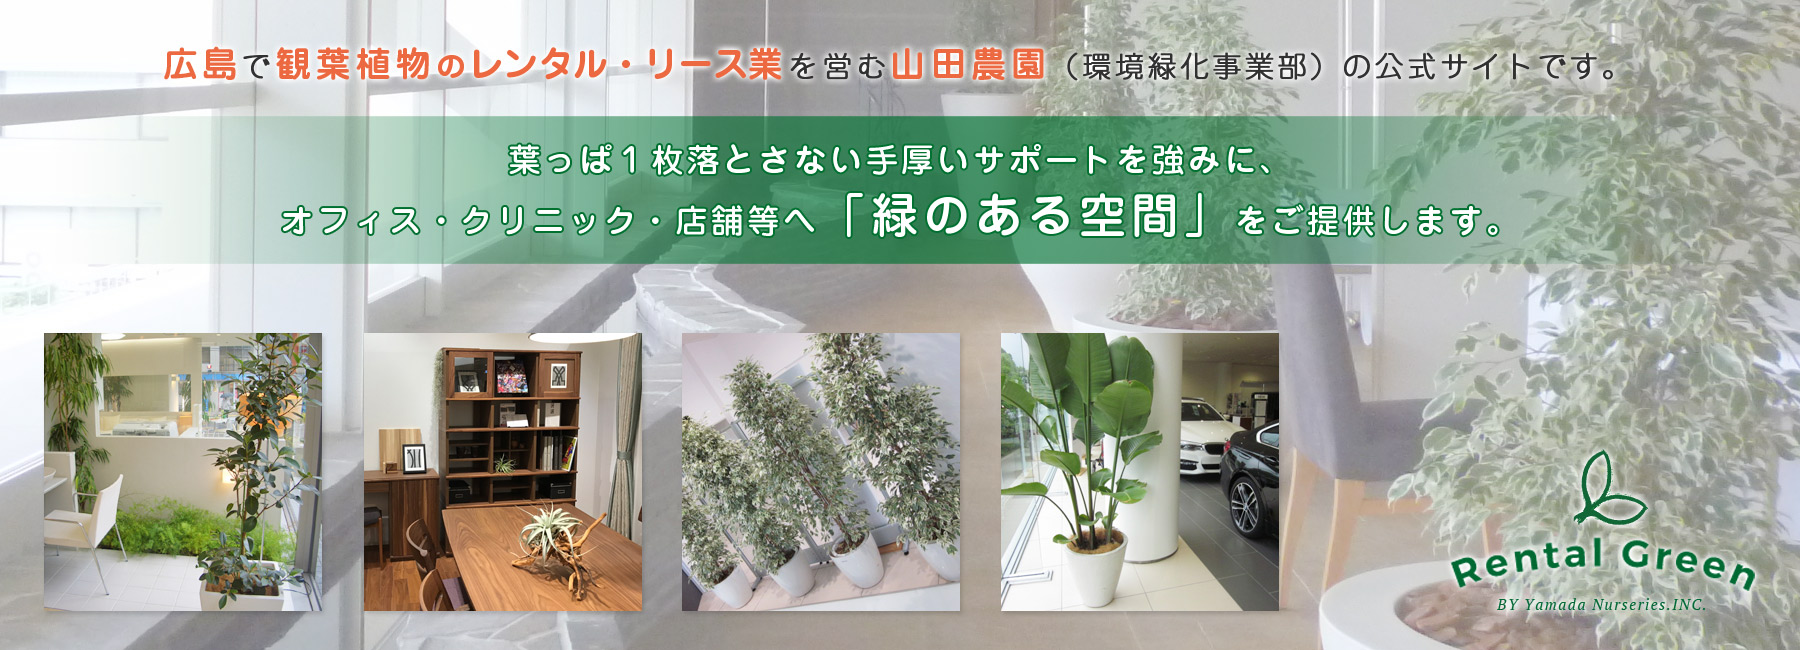  » ユッカとは【広島で観葉植物レンタルのオススメ】